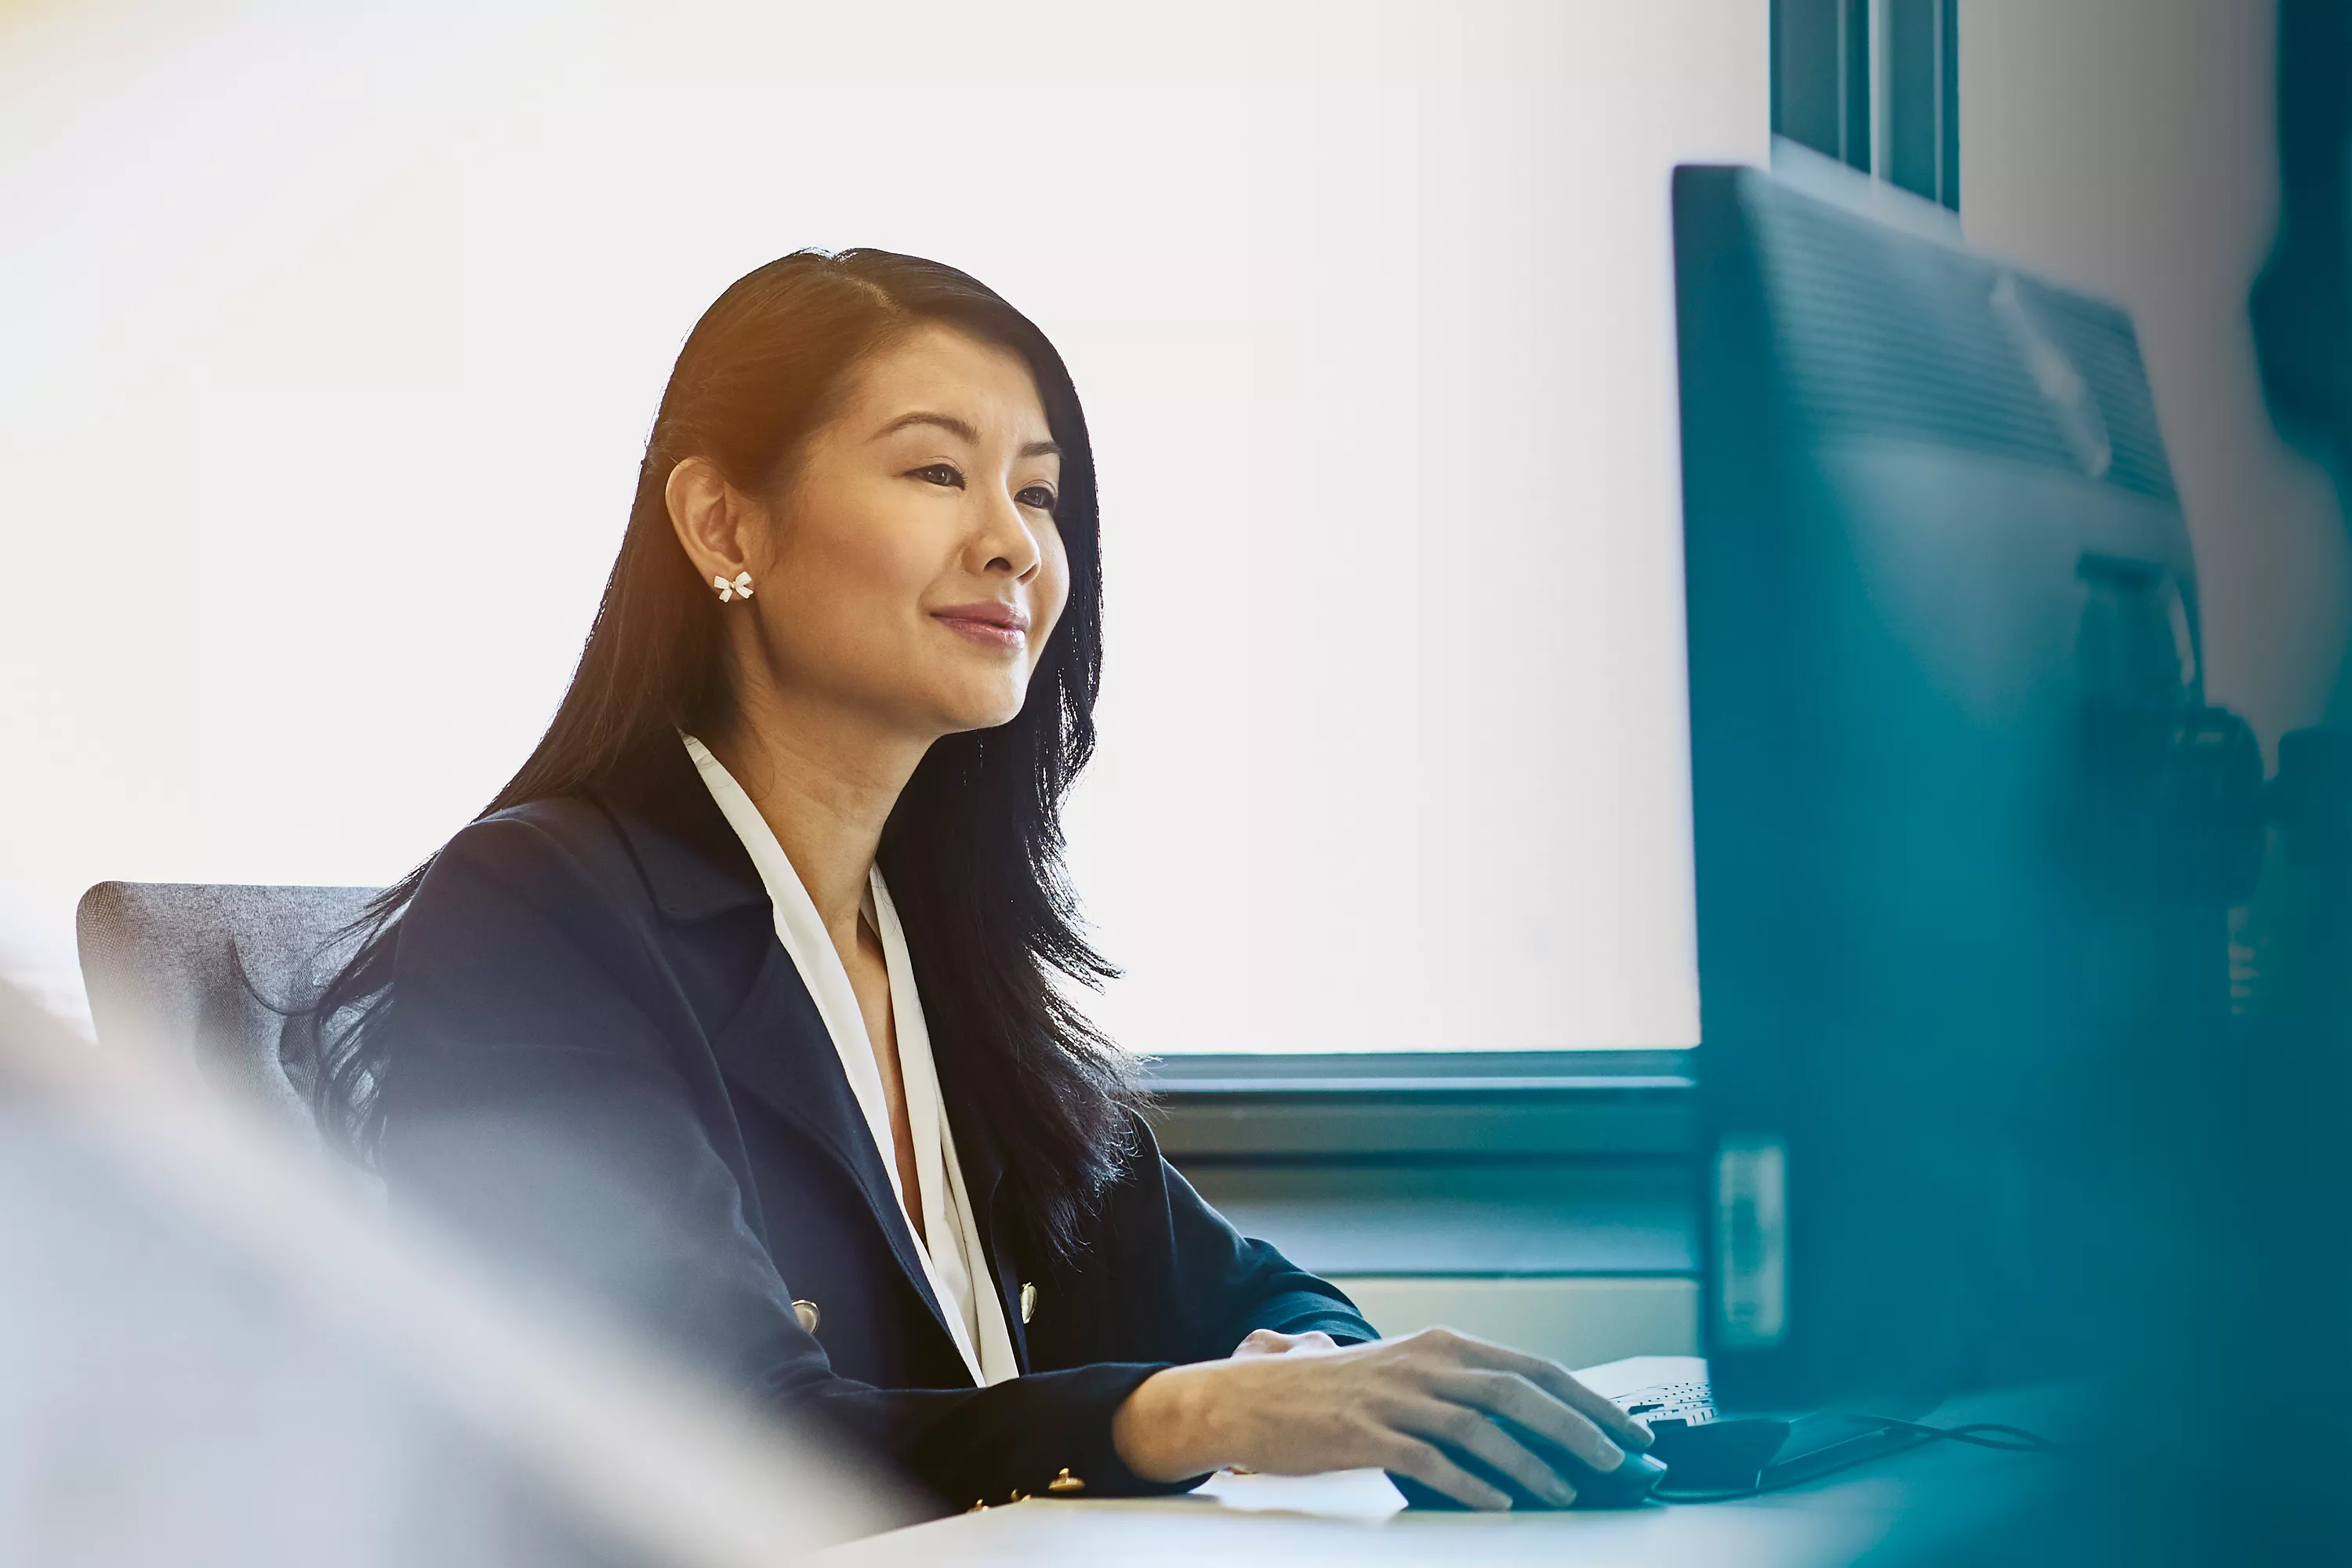 Portrait einer Frau, die an einem Arbeitsplatz sitzt und auf ihren Monitor blickt